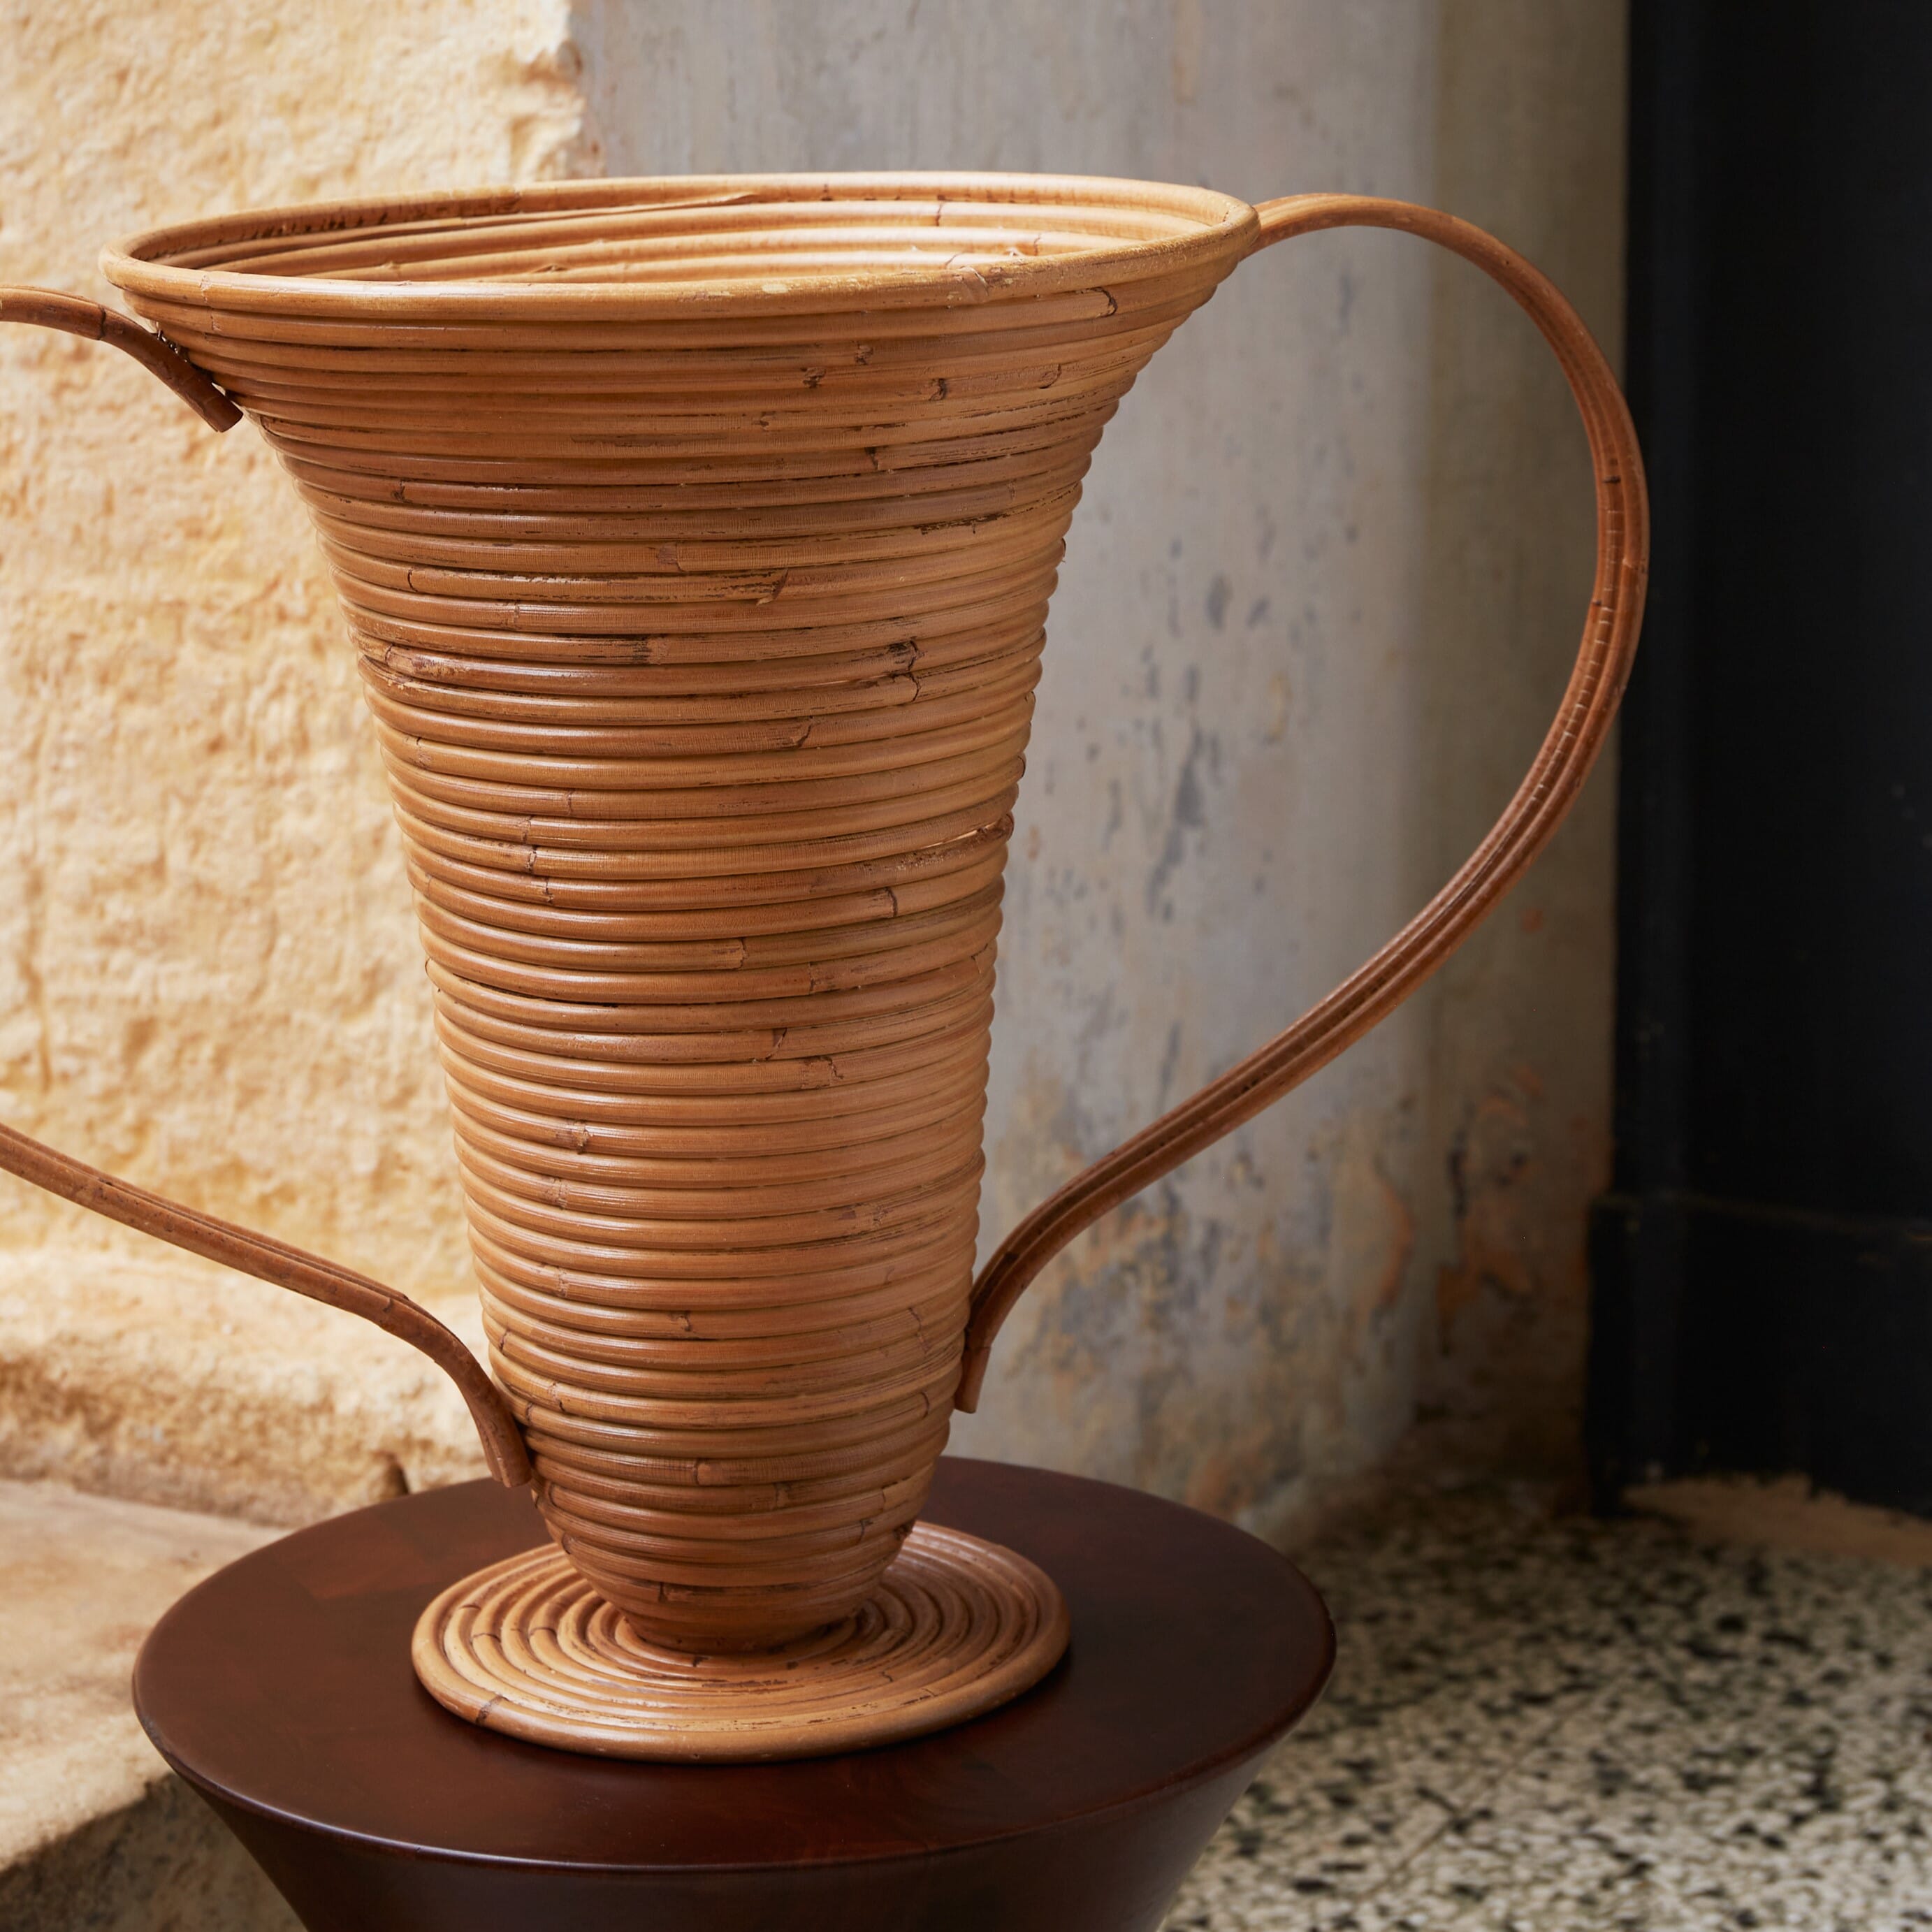 Bilde av Ferm Living - Ferm Living Amphora Vase Natural Stained L - Lunehjem.no - Interiør På Nett